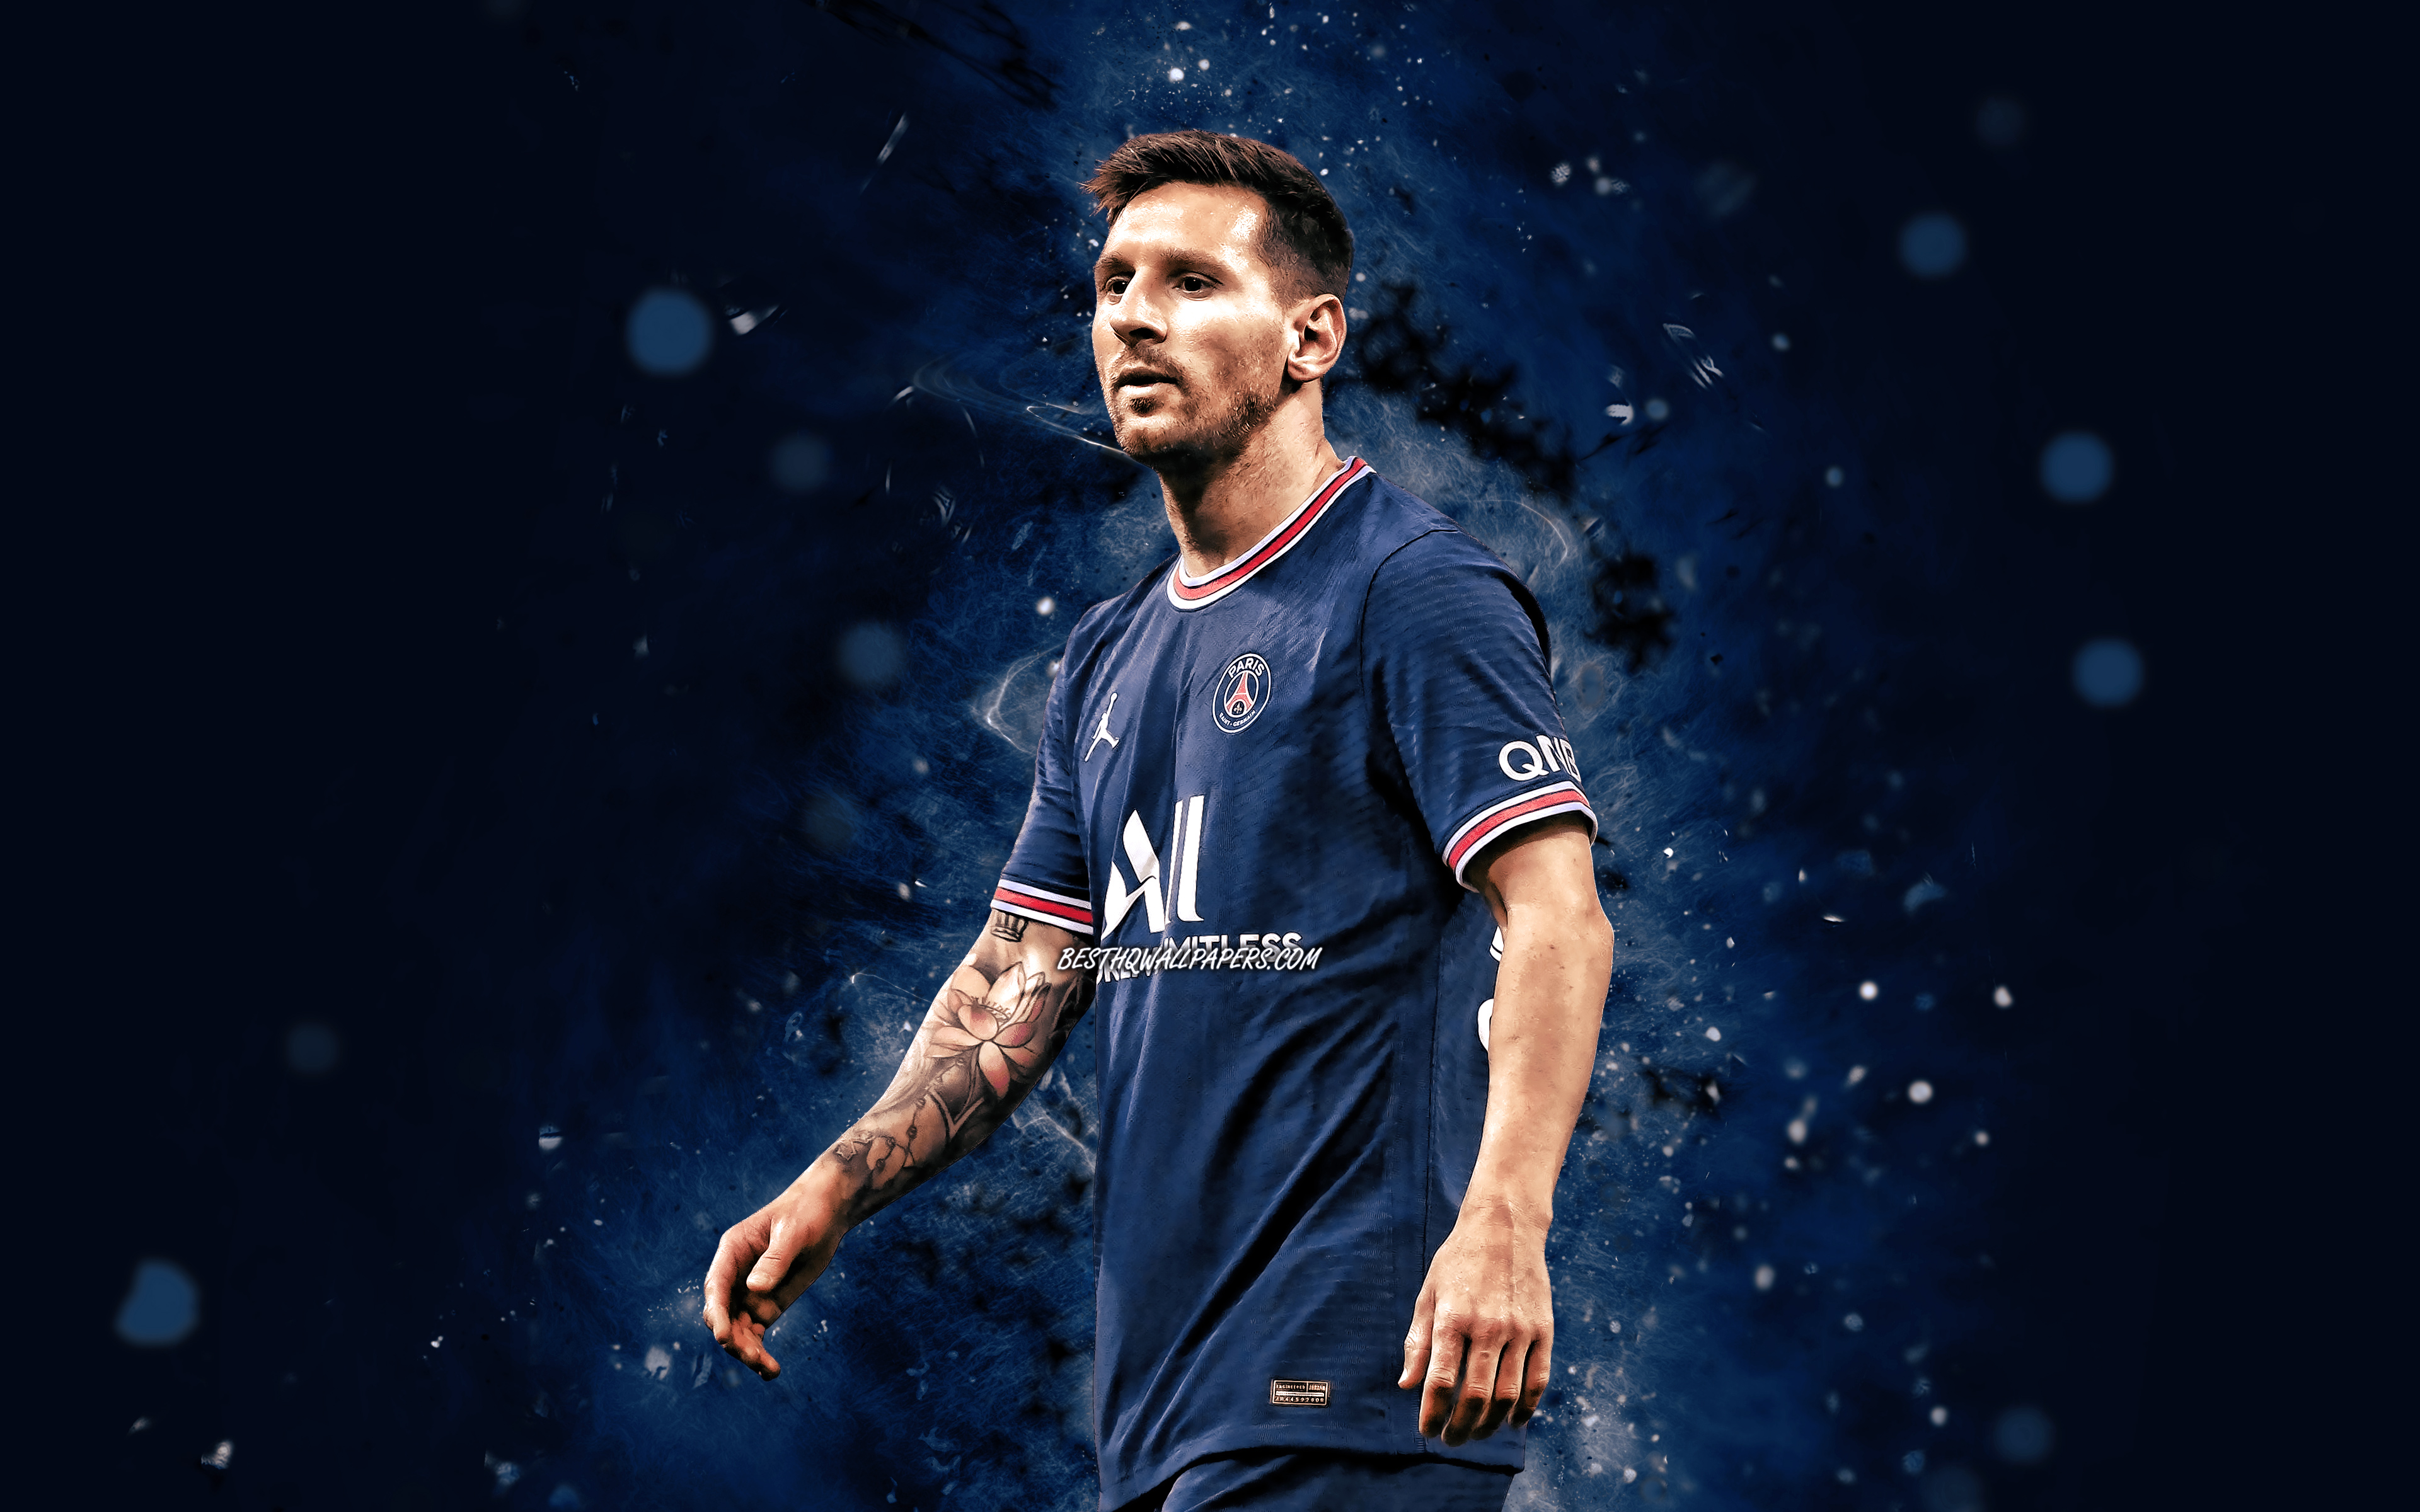 Hãy cùng thưởng thức những Hình Nền Messi 4K đẹp nhất với chất lượng hình ảnh tuyệt vời như chính siêu sao bóng đá Lionel Messi. Thỏa sức ngắm nhìn những pha bóng xuất thần của Messi trên sân cỏ và hóa thân thành fan cứng của ngôi sao Argentina.